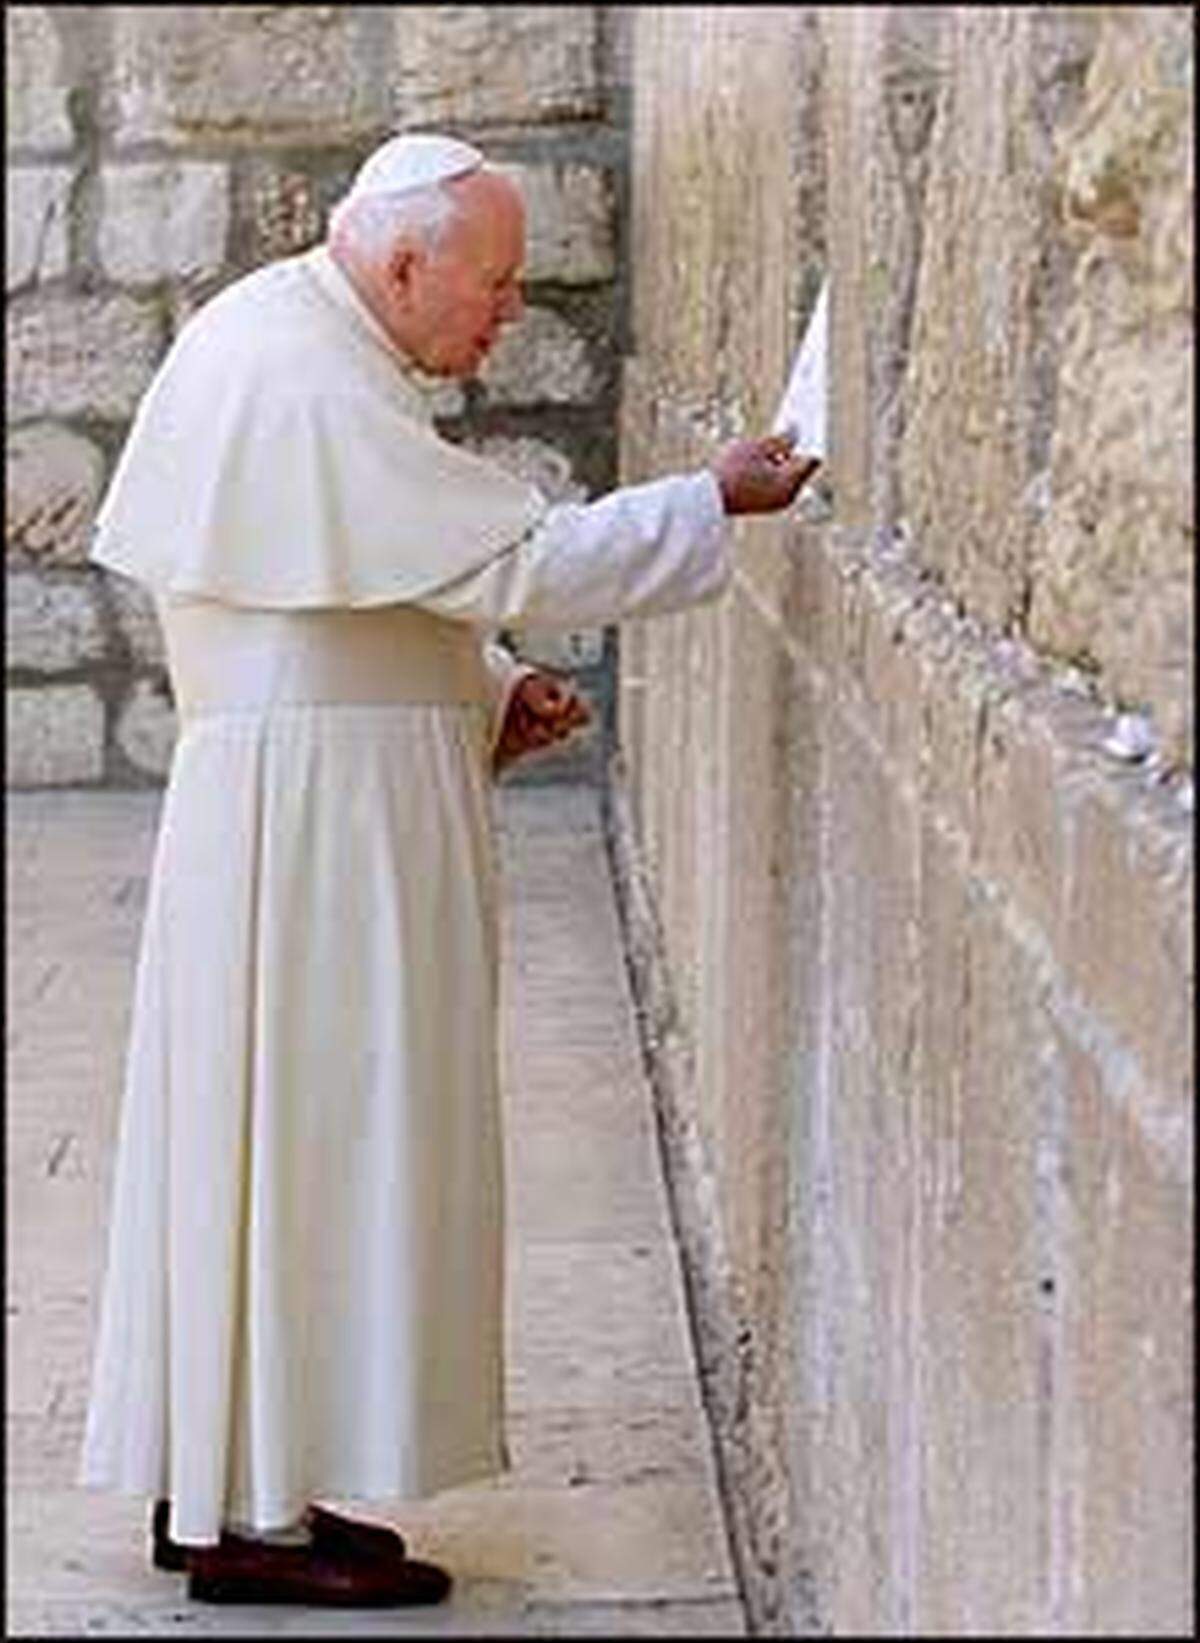 Pilgerreise nach Israel, Jordanien und in die Palästinenser-Gebiete. An der Klagemauer in Jerusalem bittet der Papst um Vergebung für das Unrecht, das Juden von Christen zugefügt wurde, er feiert Gottesdienste in Bethlehem und Nazareth.